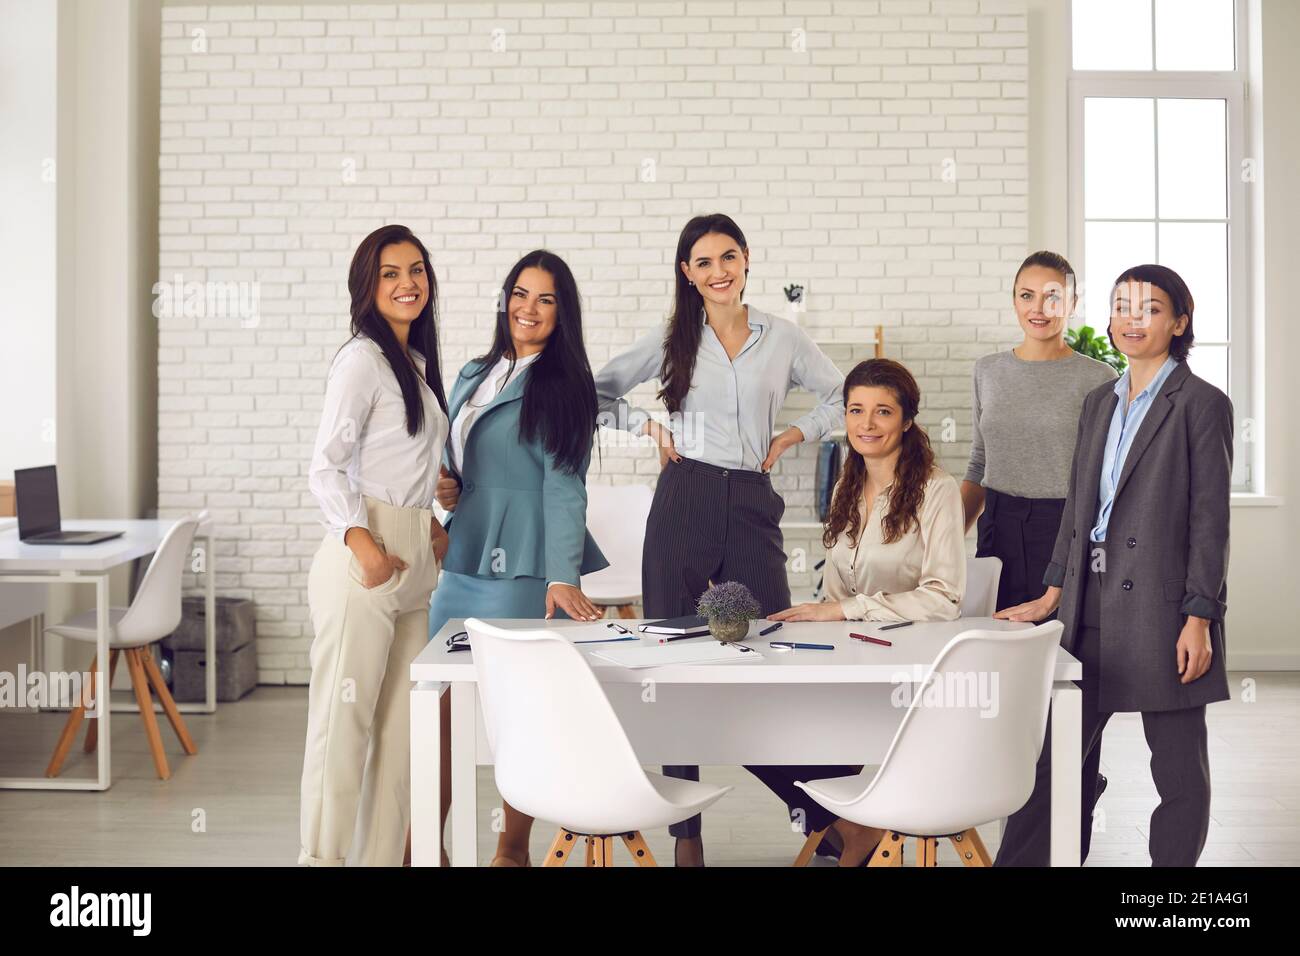 Gruppenportrait von glücklich lächelnden jungen Frauen im Büro versammelt Für Firmenmeeting Stockfoto